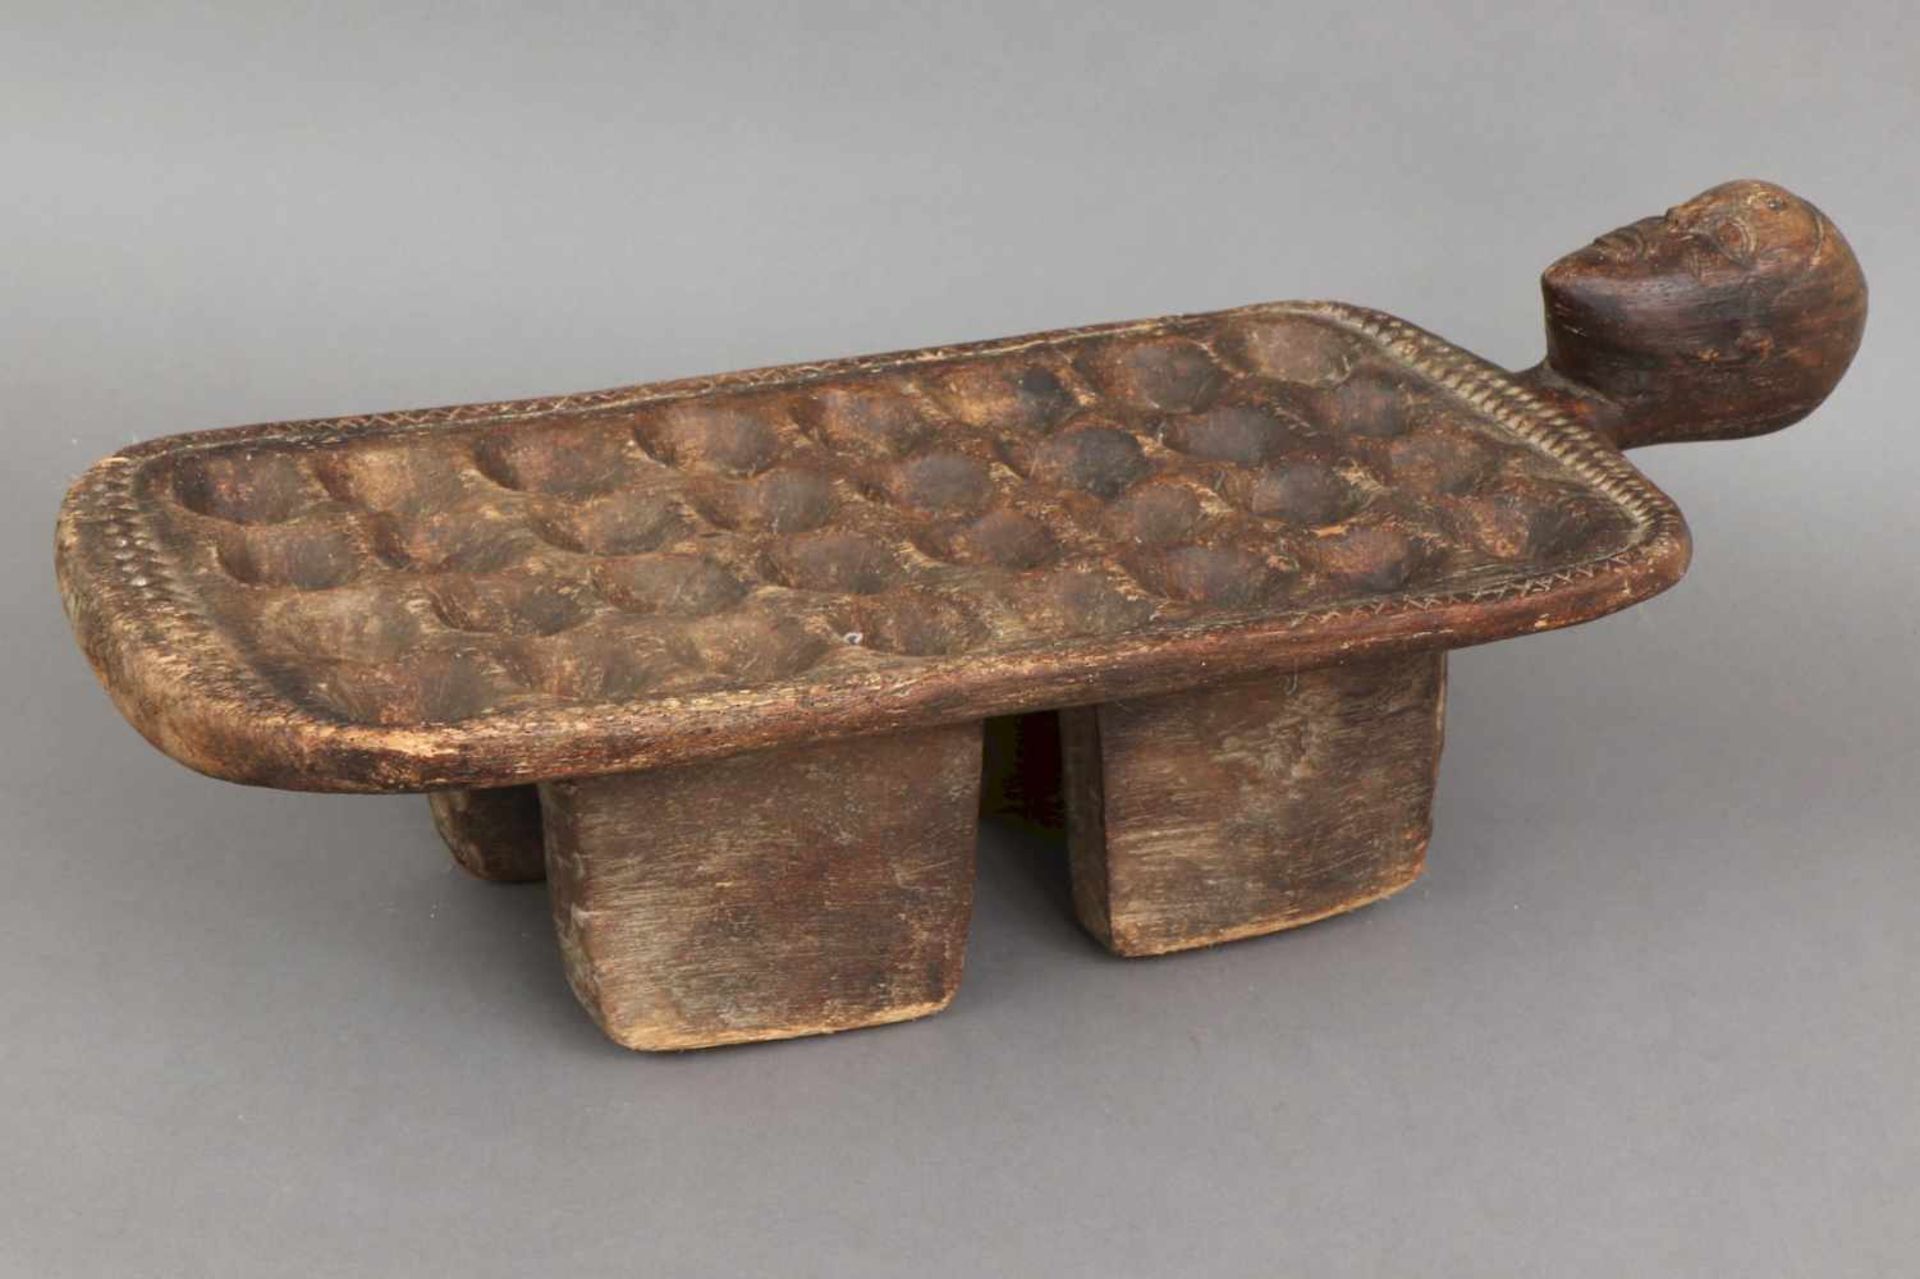 Oware (Awale) Spielbrett, wohl Ghana Holz, geschnitzt und dunkel patiniert, eckiges Brett mit insg. - Bild 2 aus 3